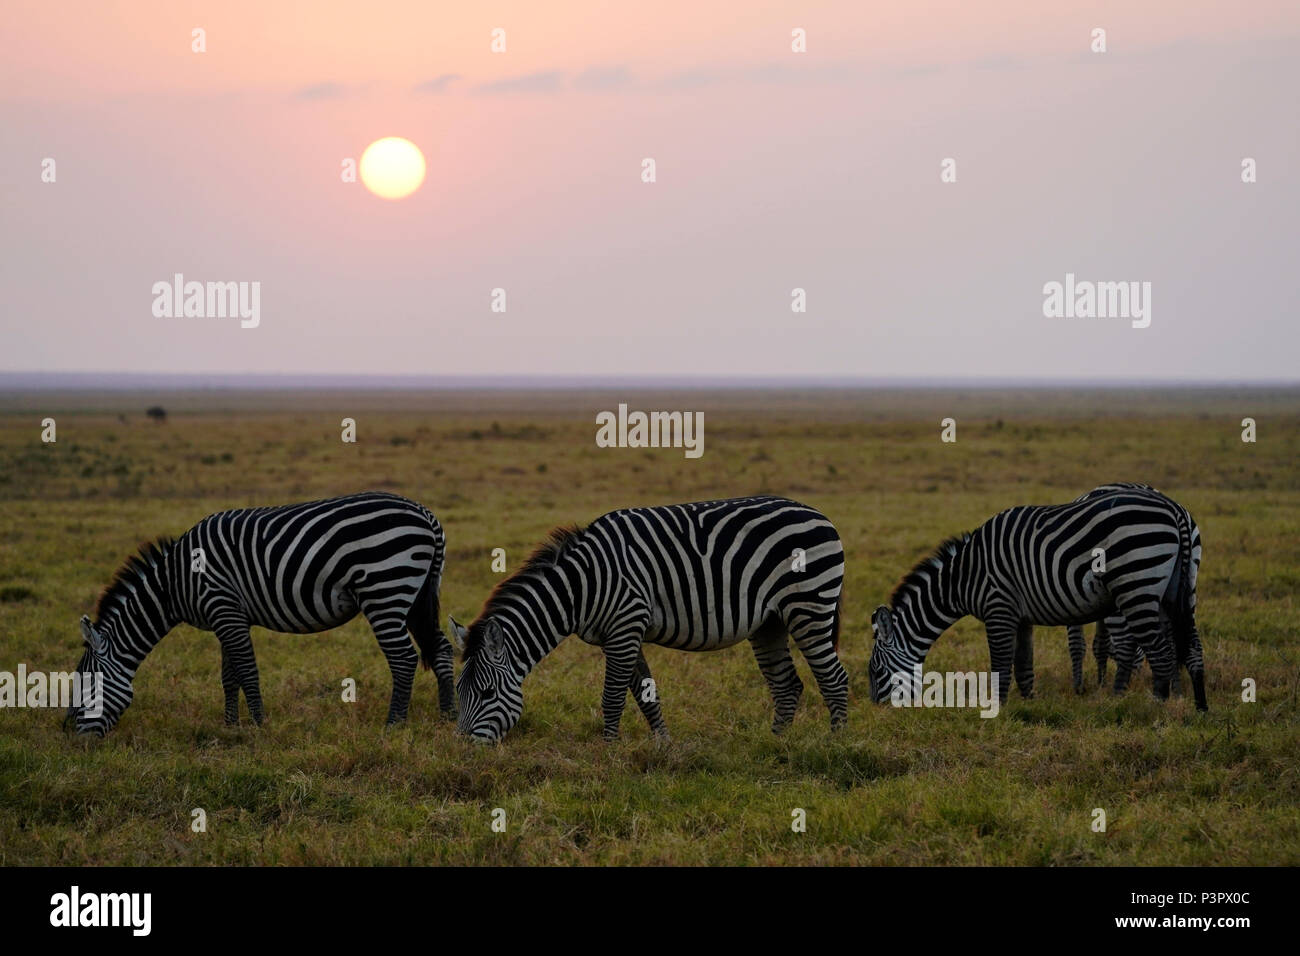 Grant's Zebra (Equus burchellii boehmi) group grazing in savanna, Amboseli National Park, Kenya Stock Photo